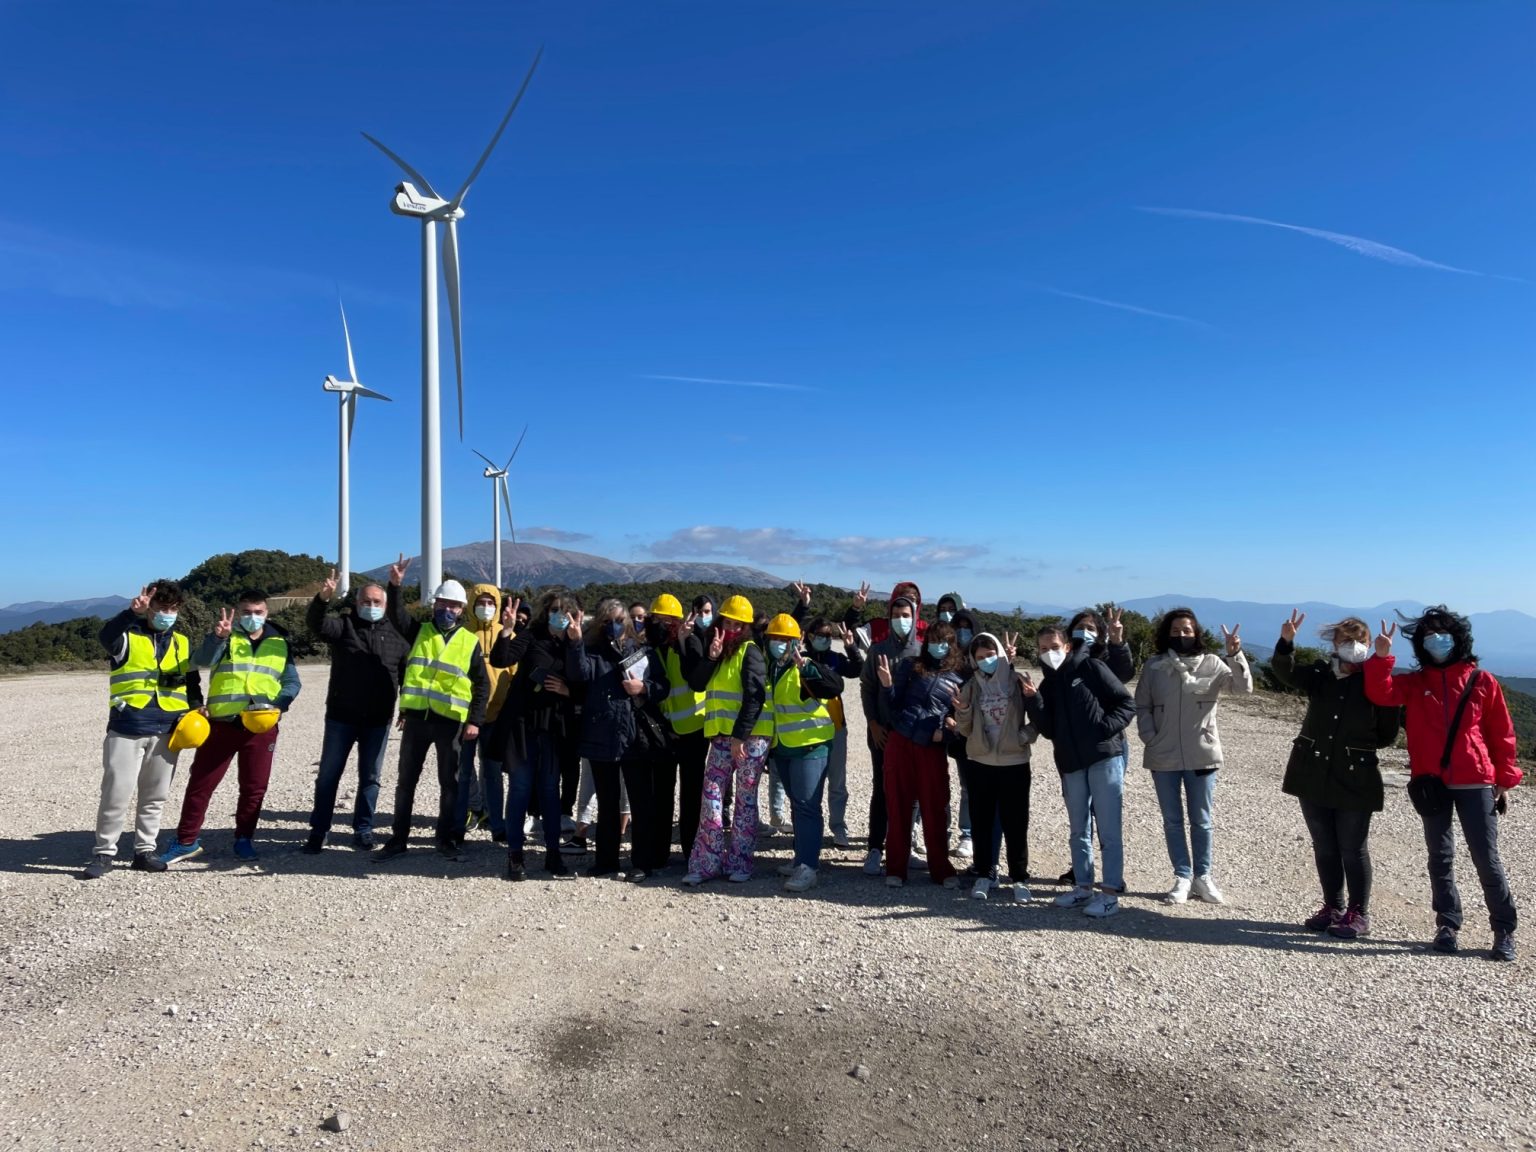 Το Αιολικό Πάρκο Κουρομάντρι – Ριγανόλακκα καλωσόρισε τους μαθητές του Ευρωπαϊκού Προγράμματος Erasmus+ “Energy Resources for Sustainability”